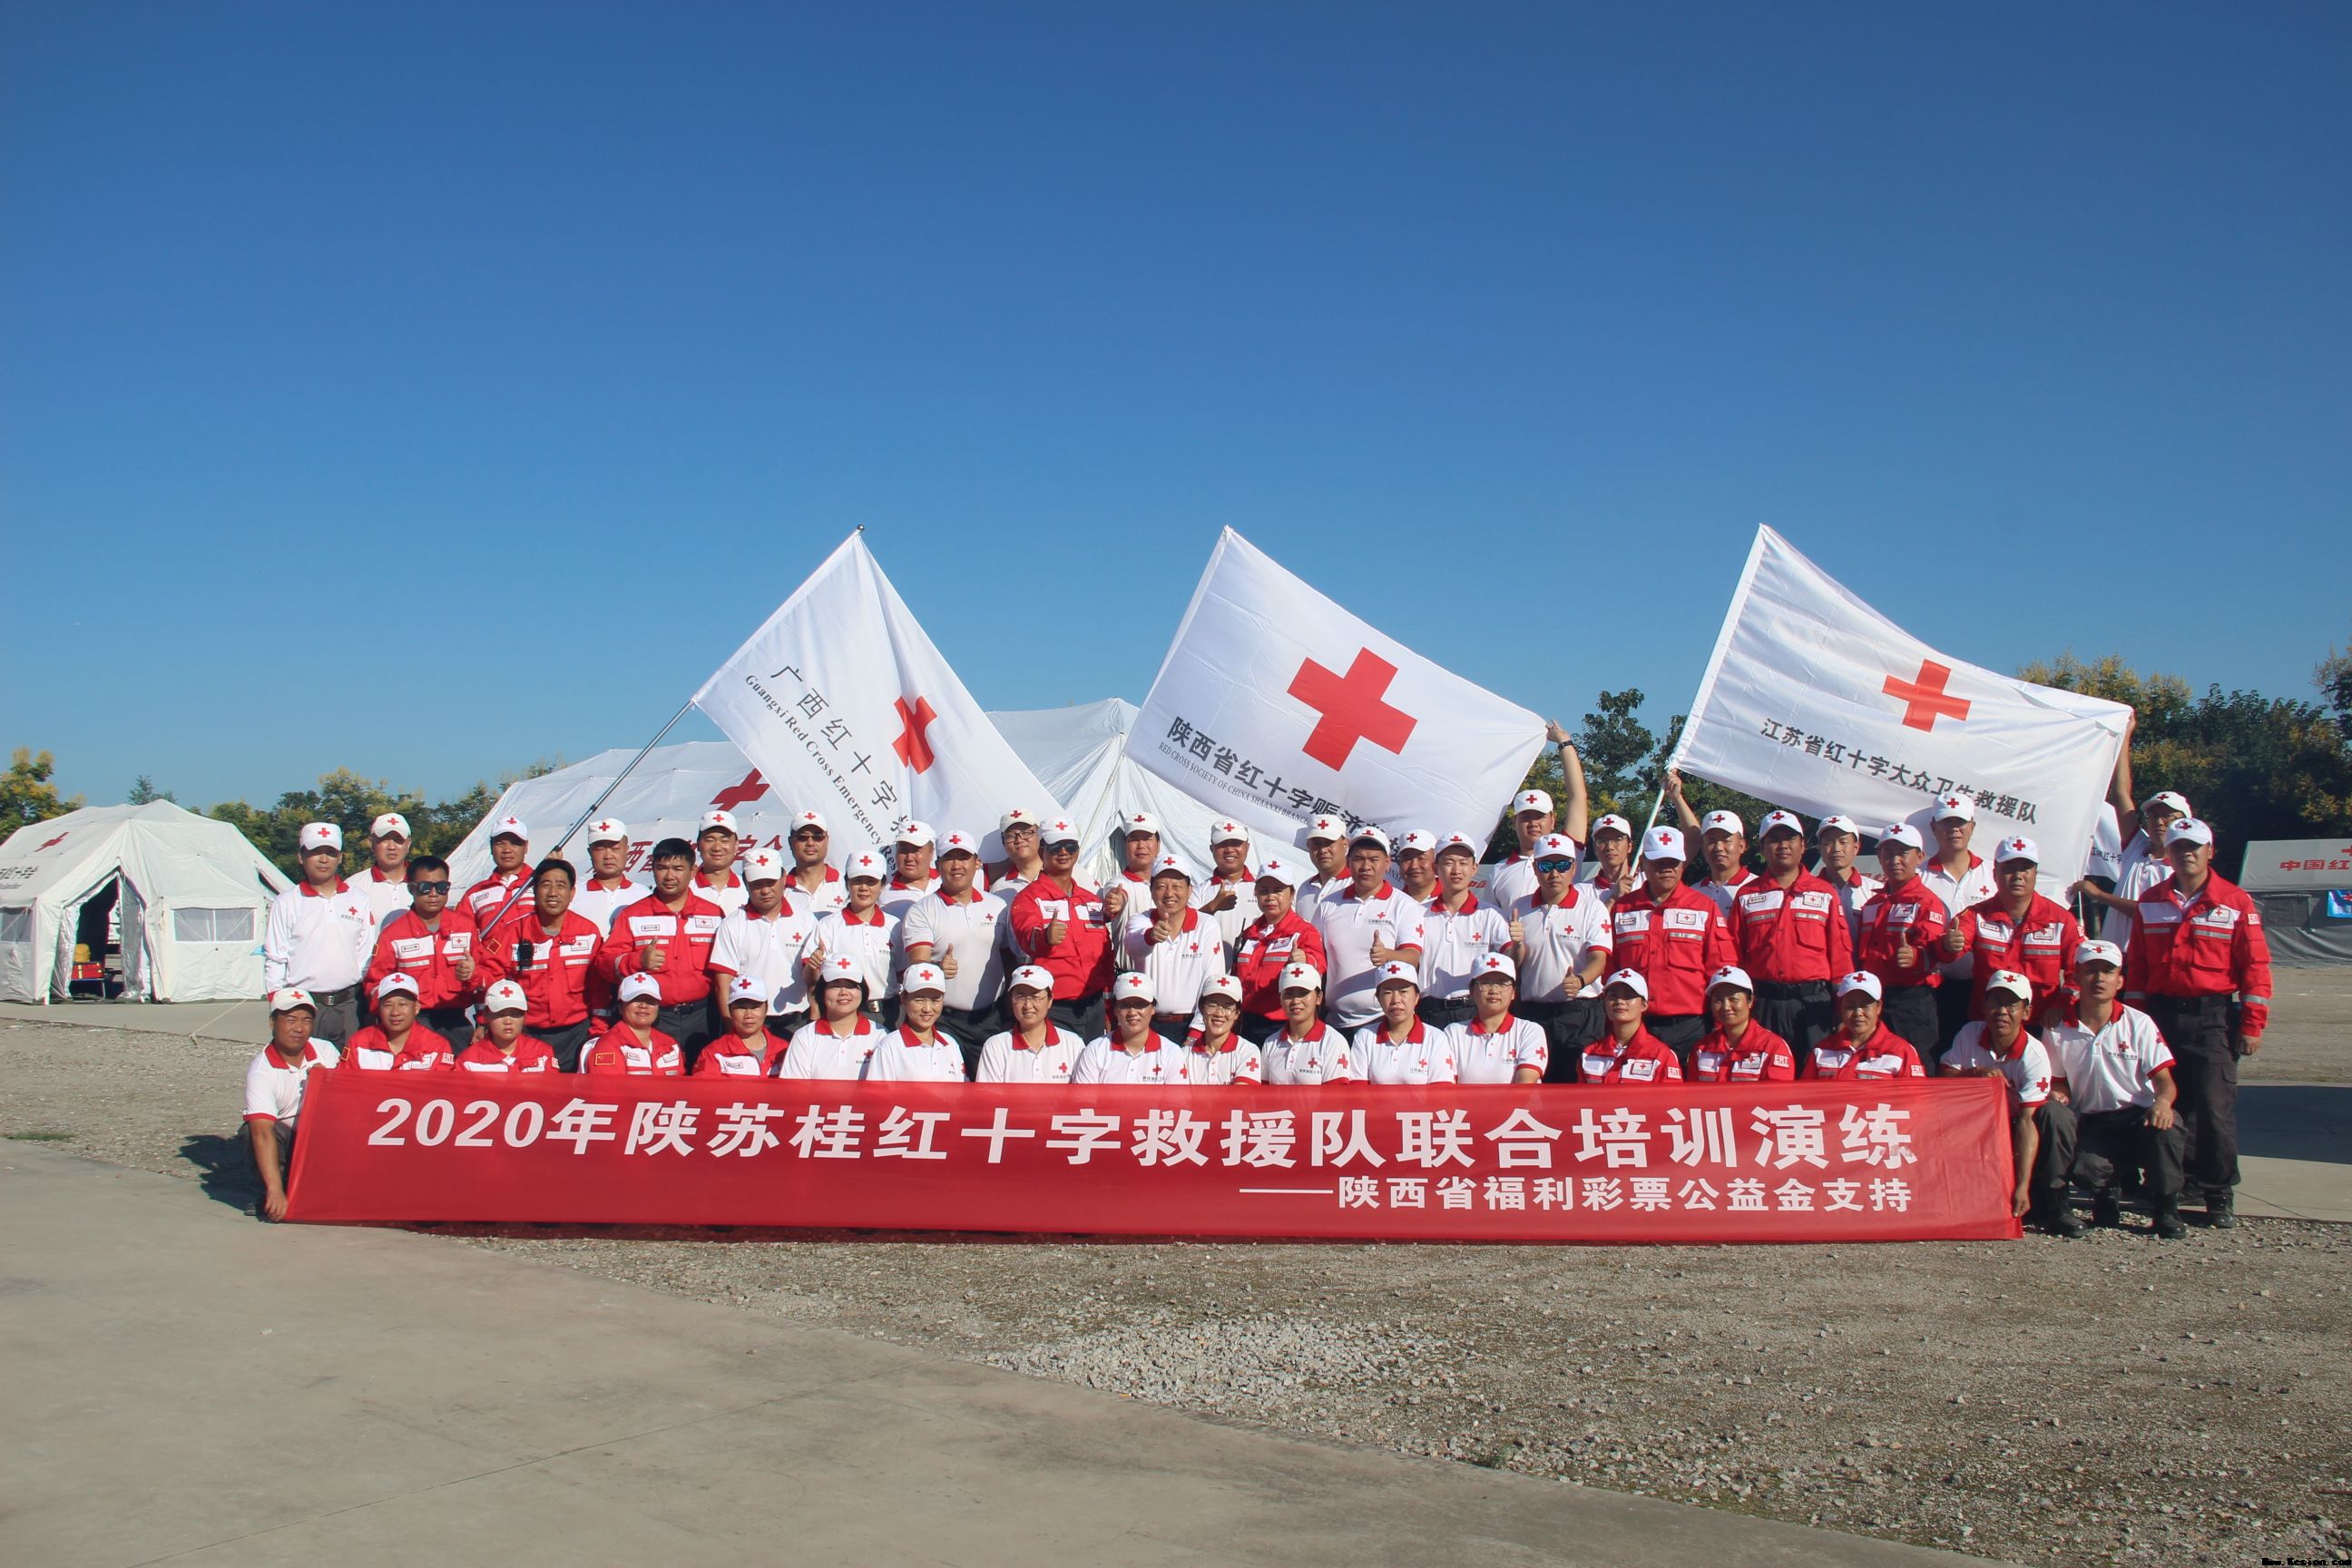 2020年陕苏桂红十字救援队联合培训演练圆满结束